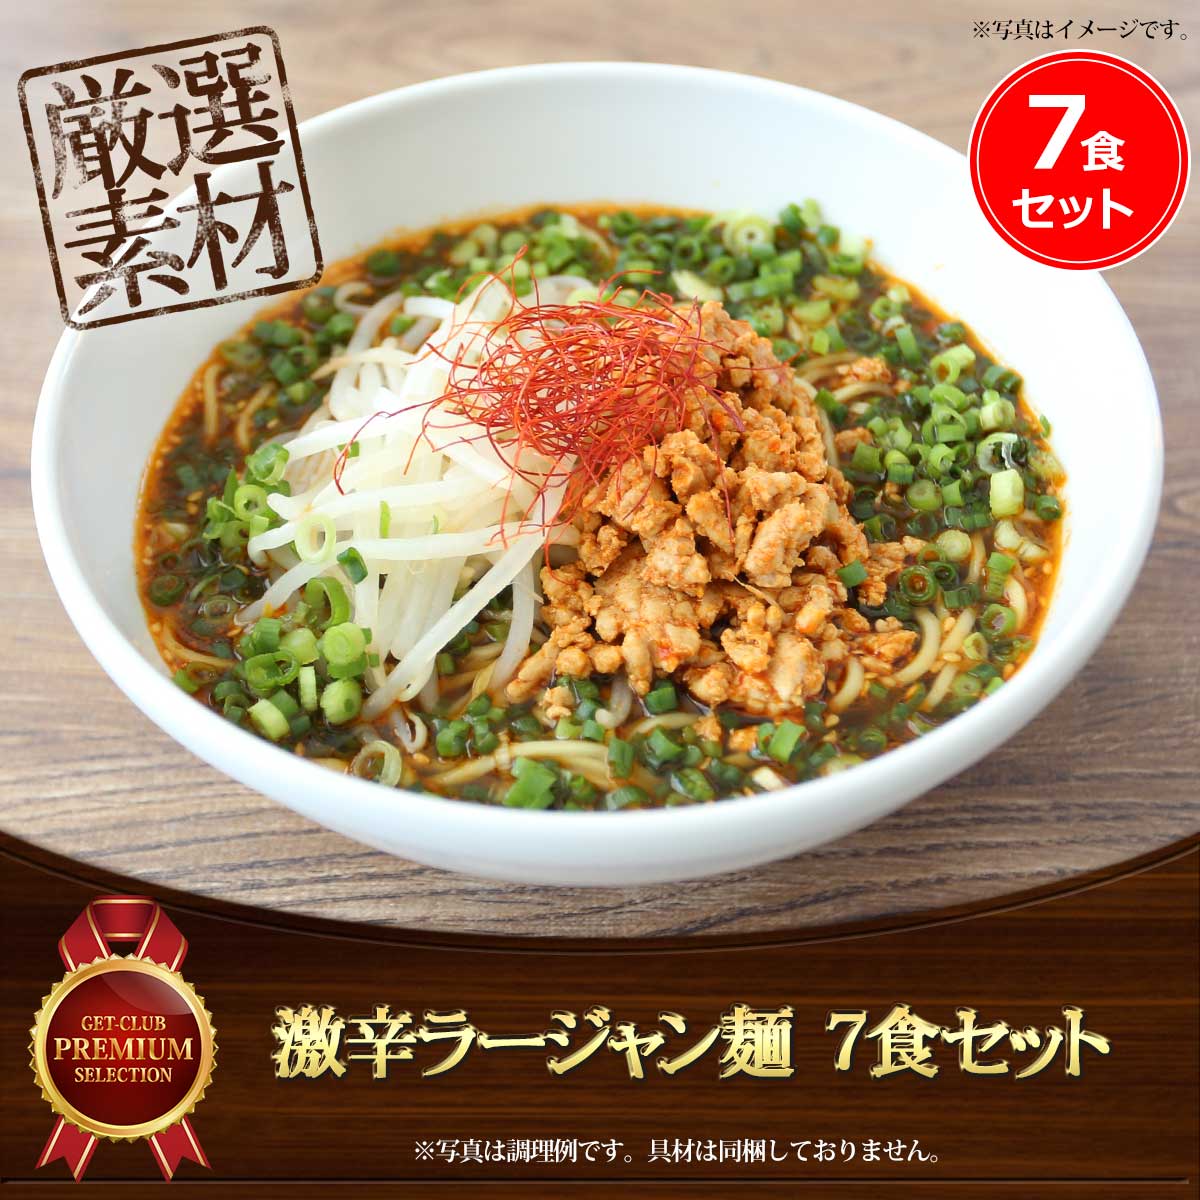 激辛ラージャン麺（7食セット）老舗製麺所の中太ストレート麺使用